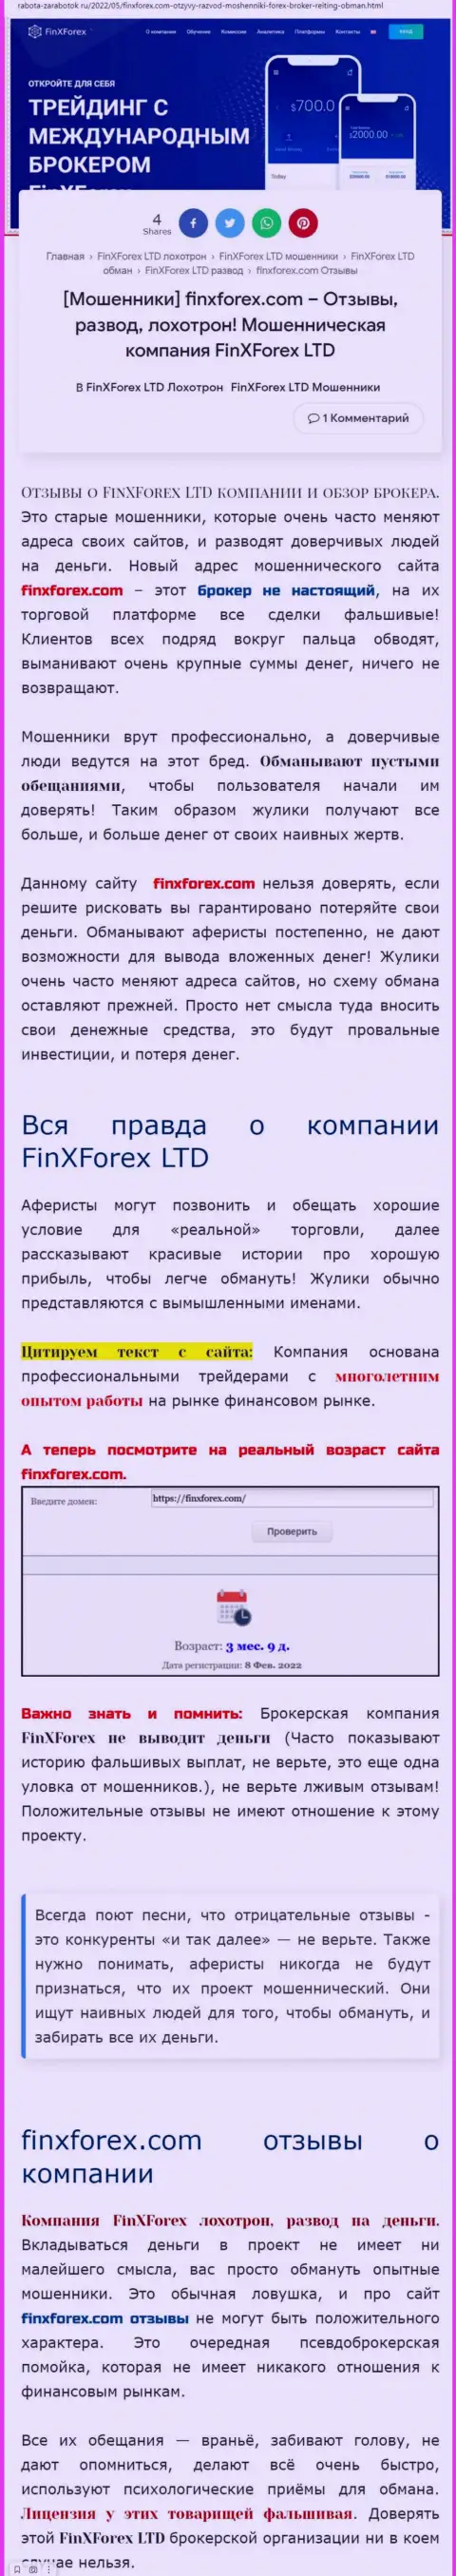 Создатель обзорной статьи об FinXForex LTD утверждает, что в организации Фин Икс Форекс лохотронят